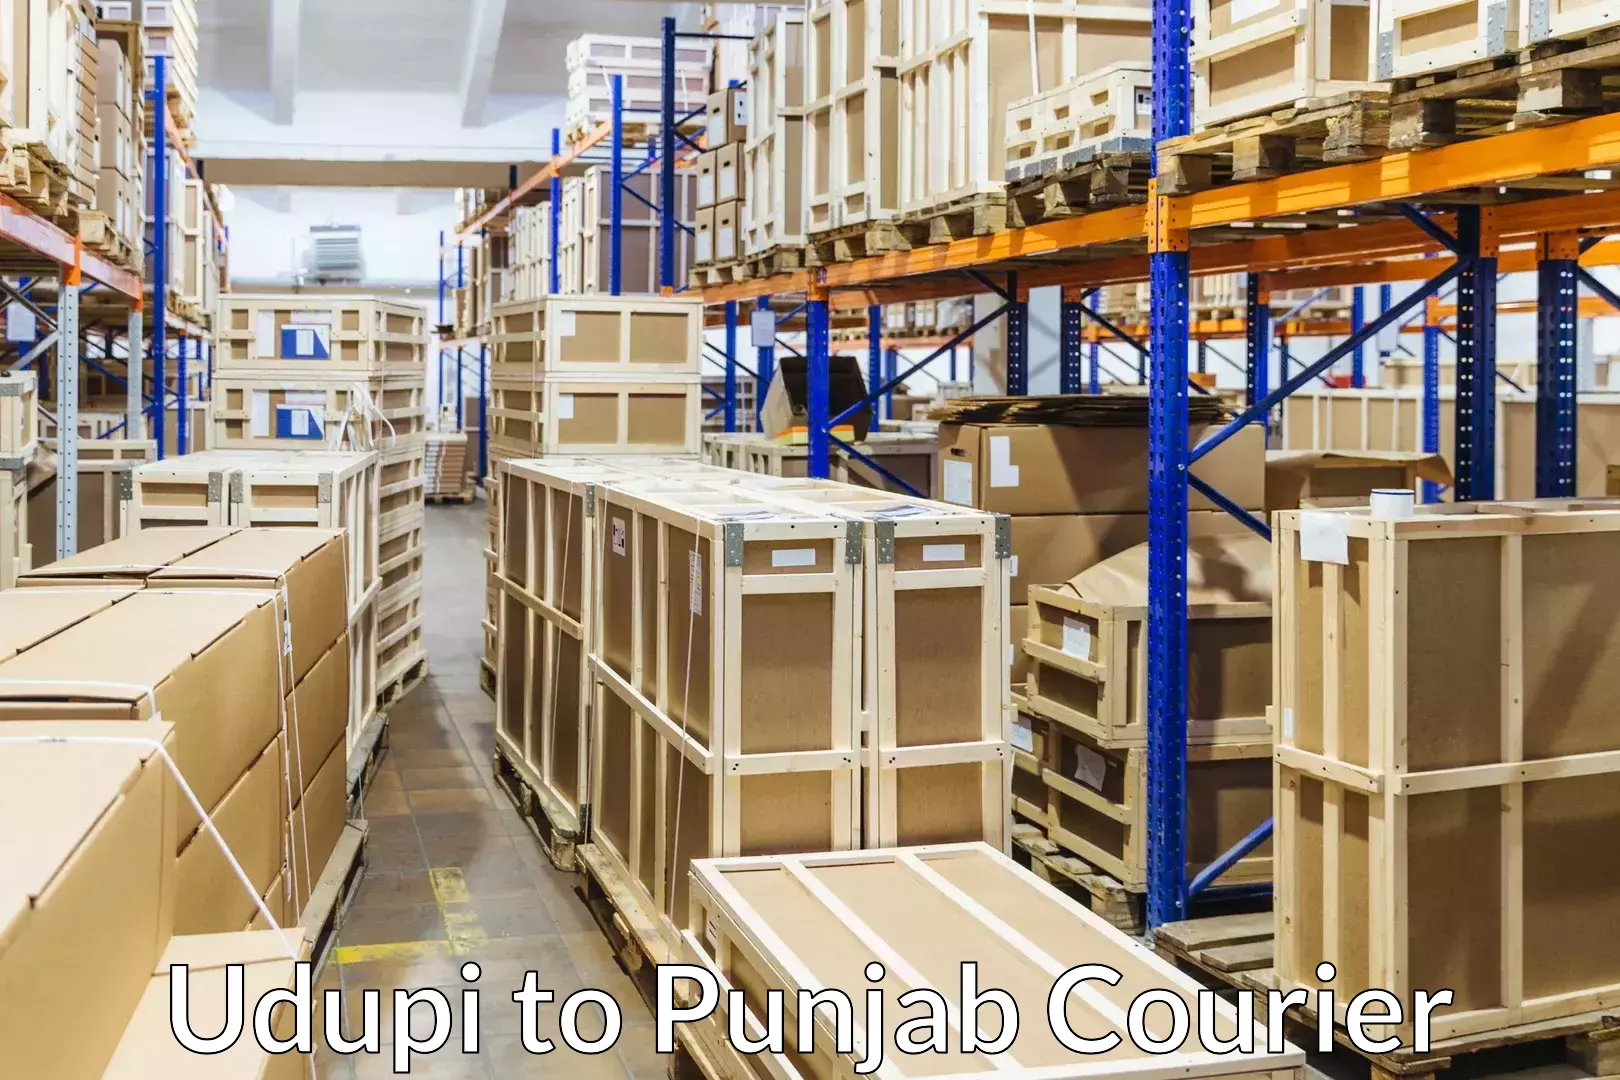 Customized moving experience Udupi to Central University of Punjab Bathinda